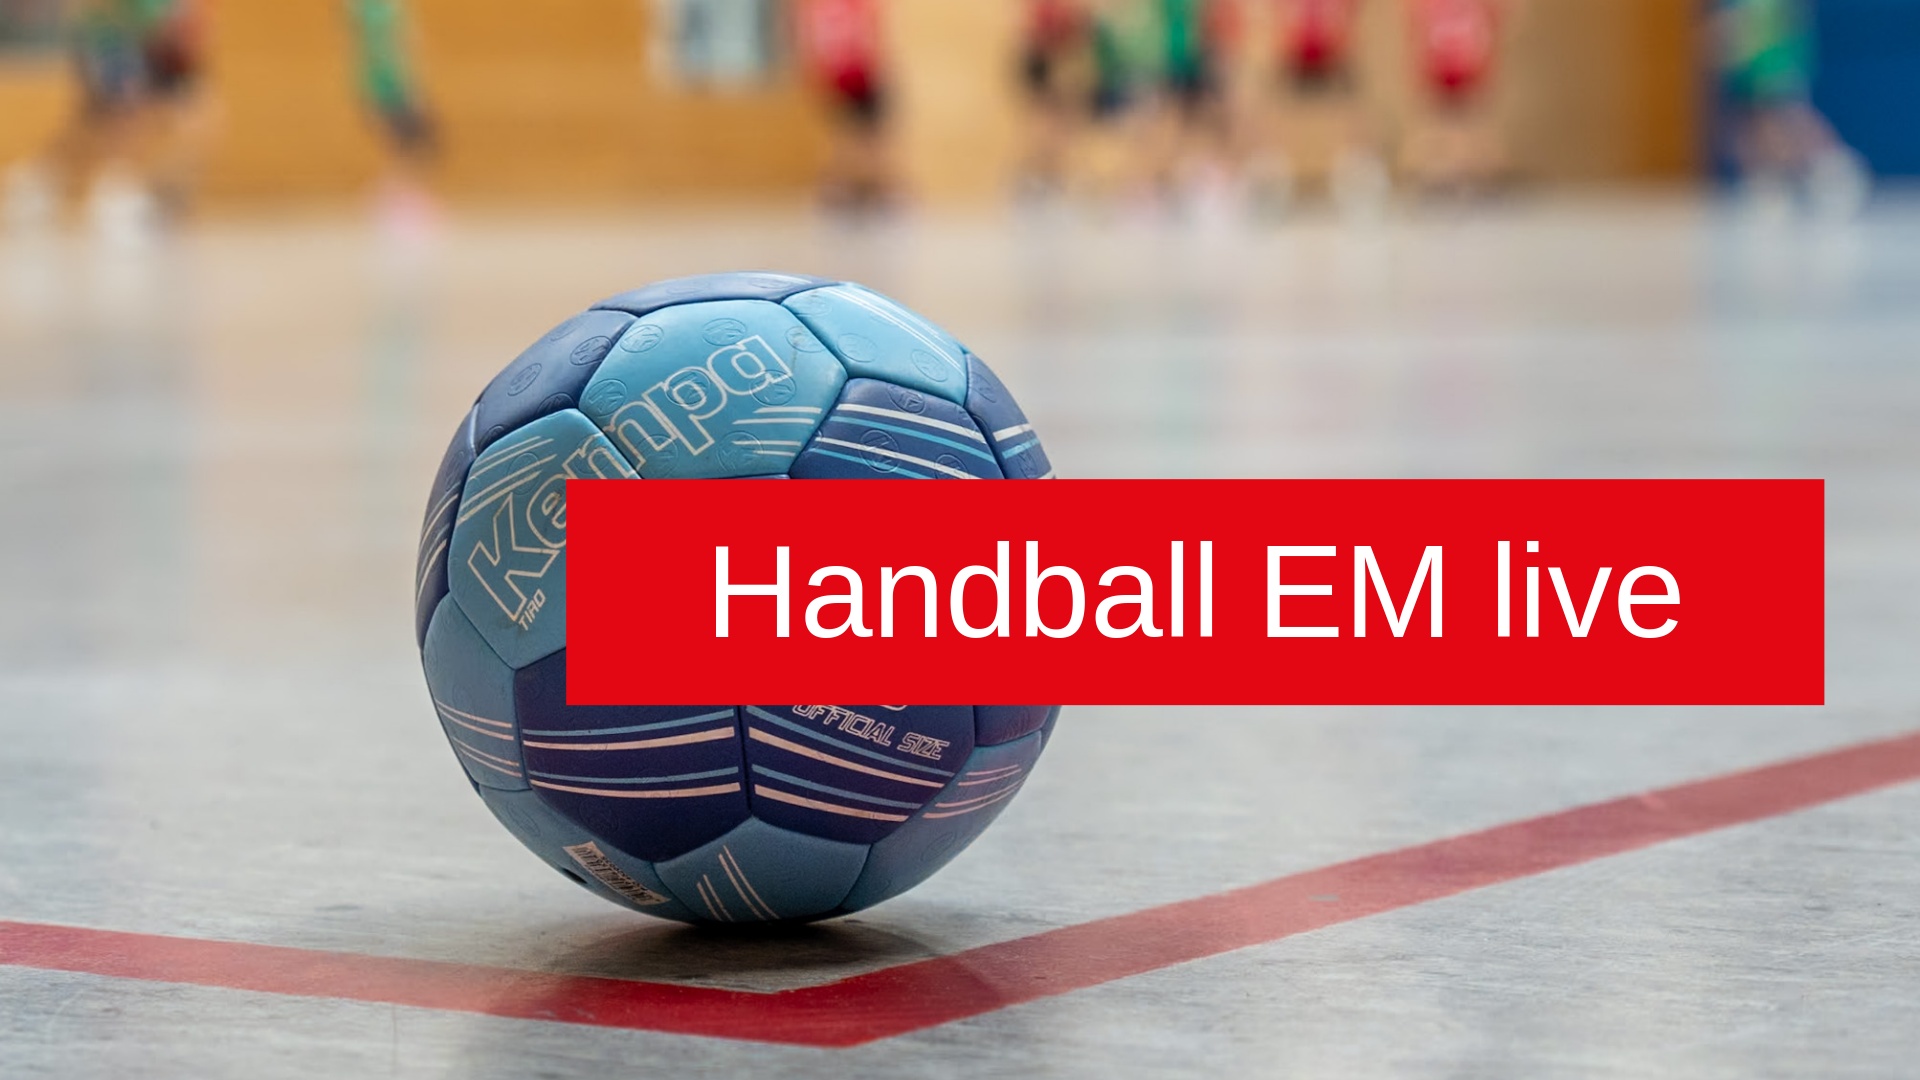 Handball EM live